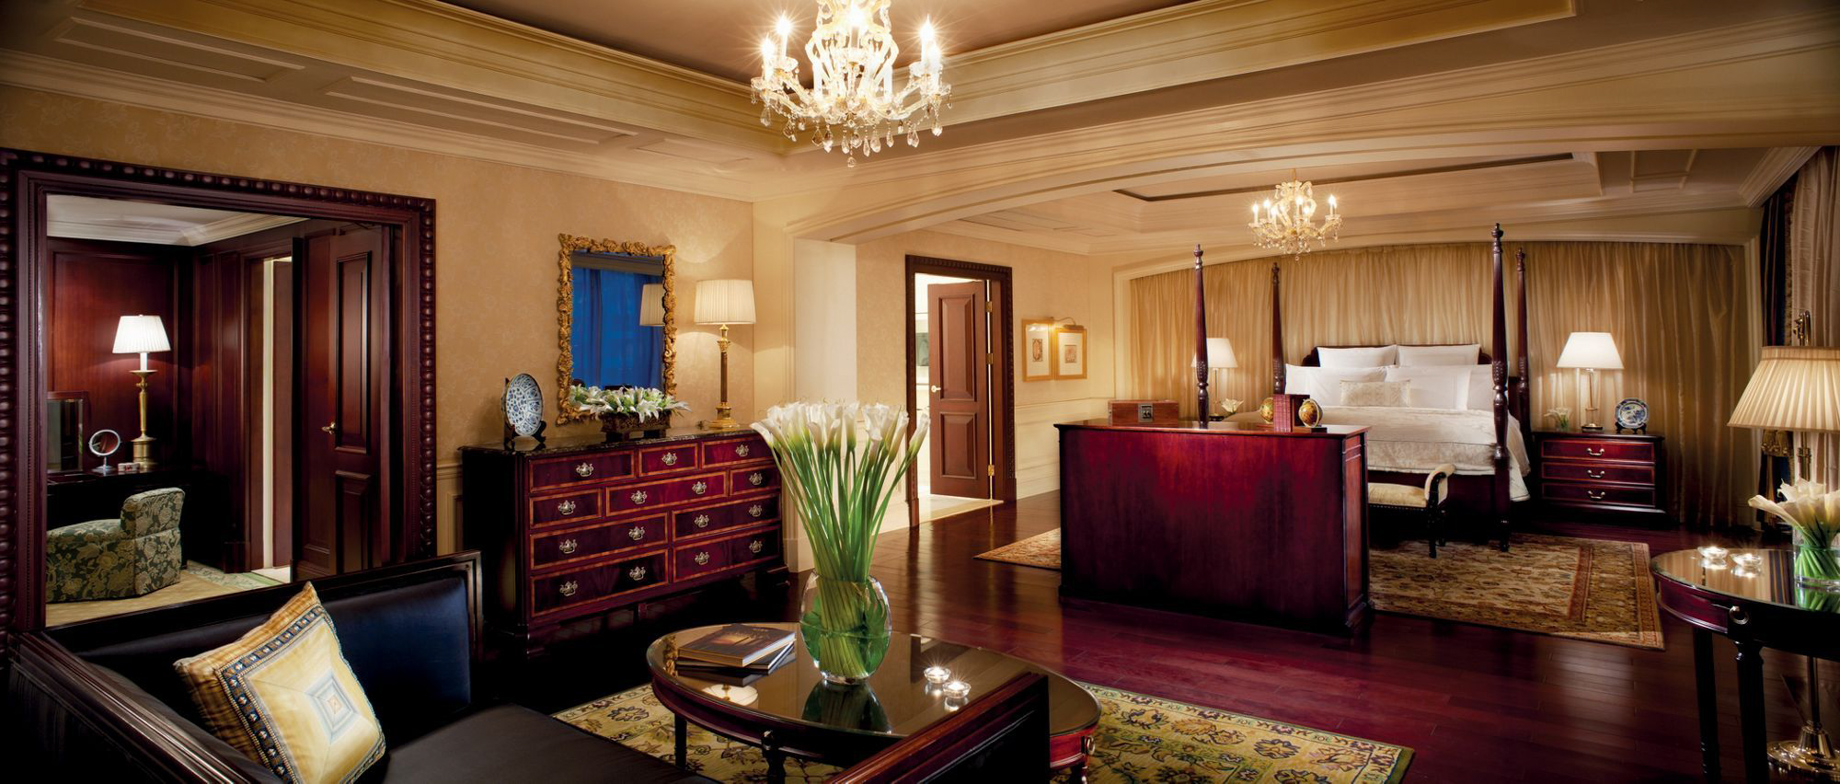 The Ritz-Carlton, Beijing Hotel – Beijing, China – The Ritz-Carlton Suite